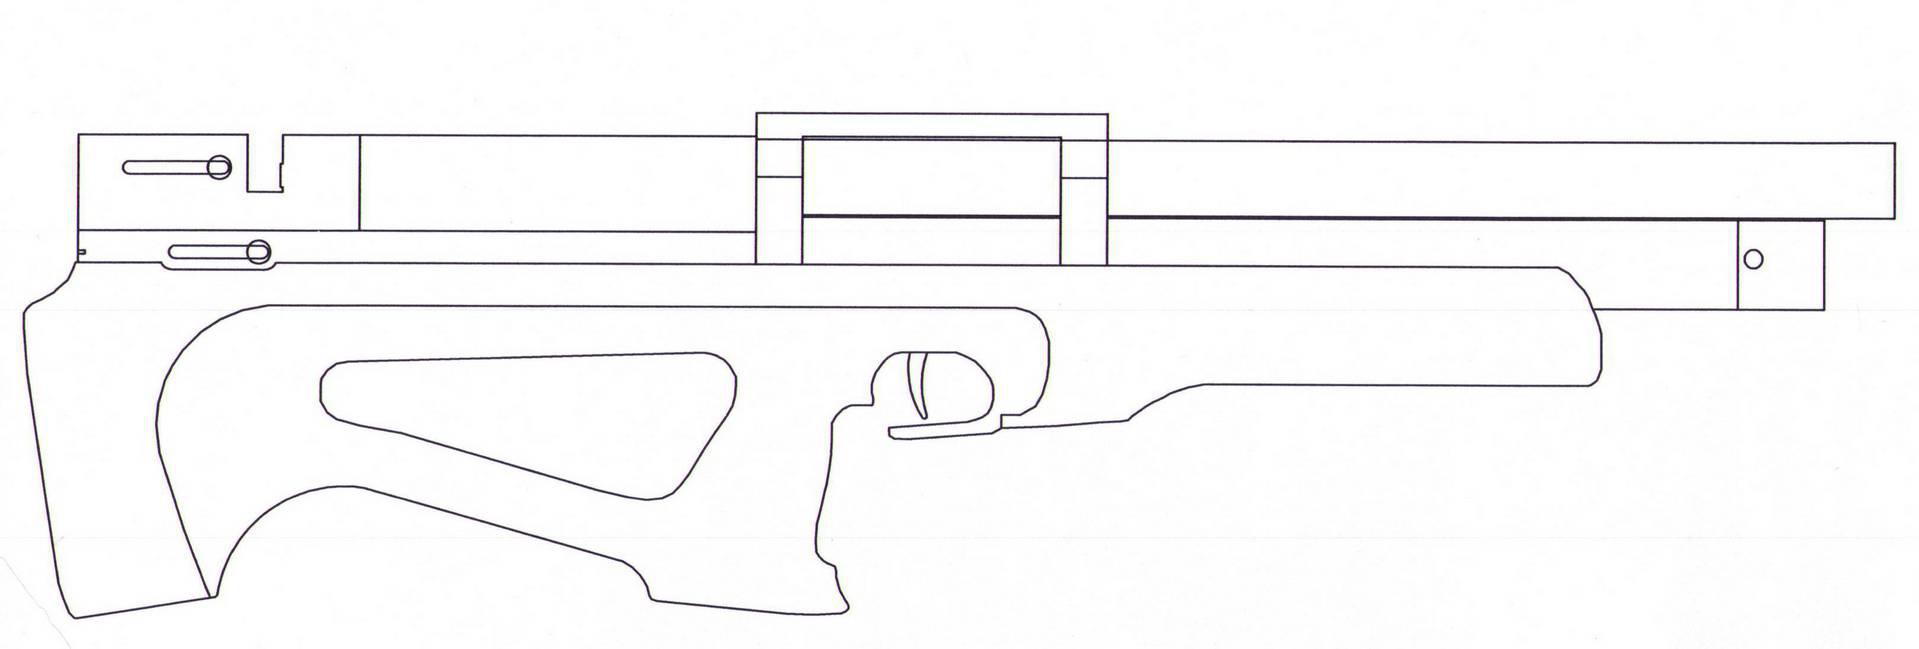 снайперская винтовка awp чертеж фото 115